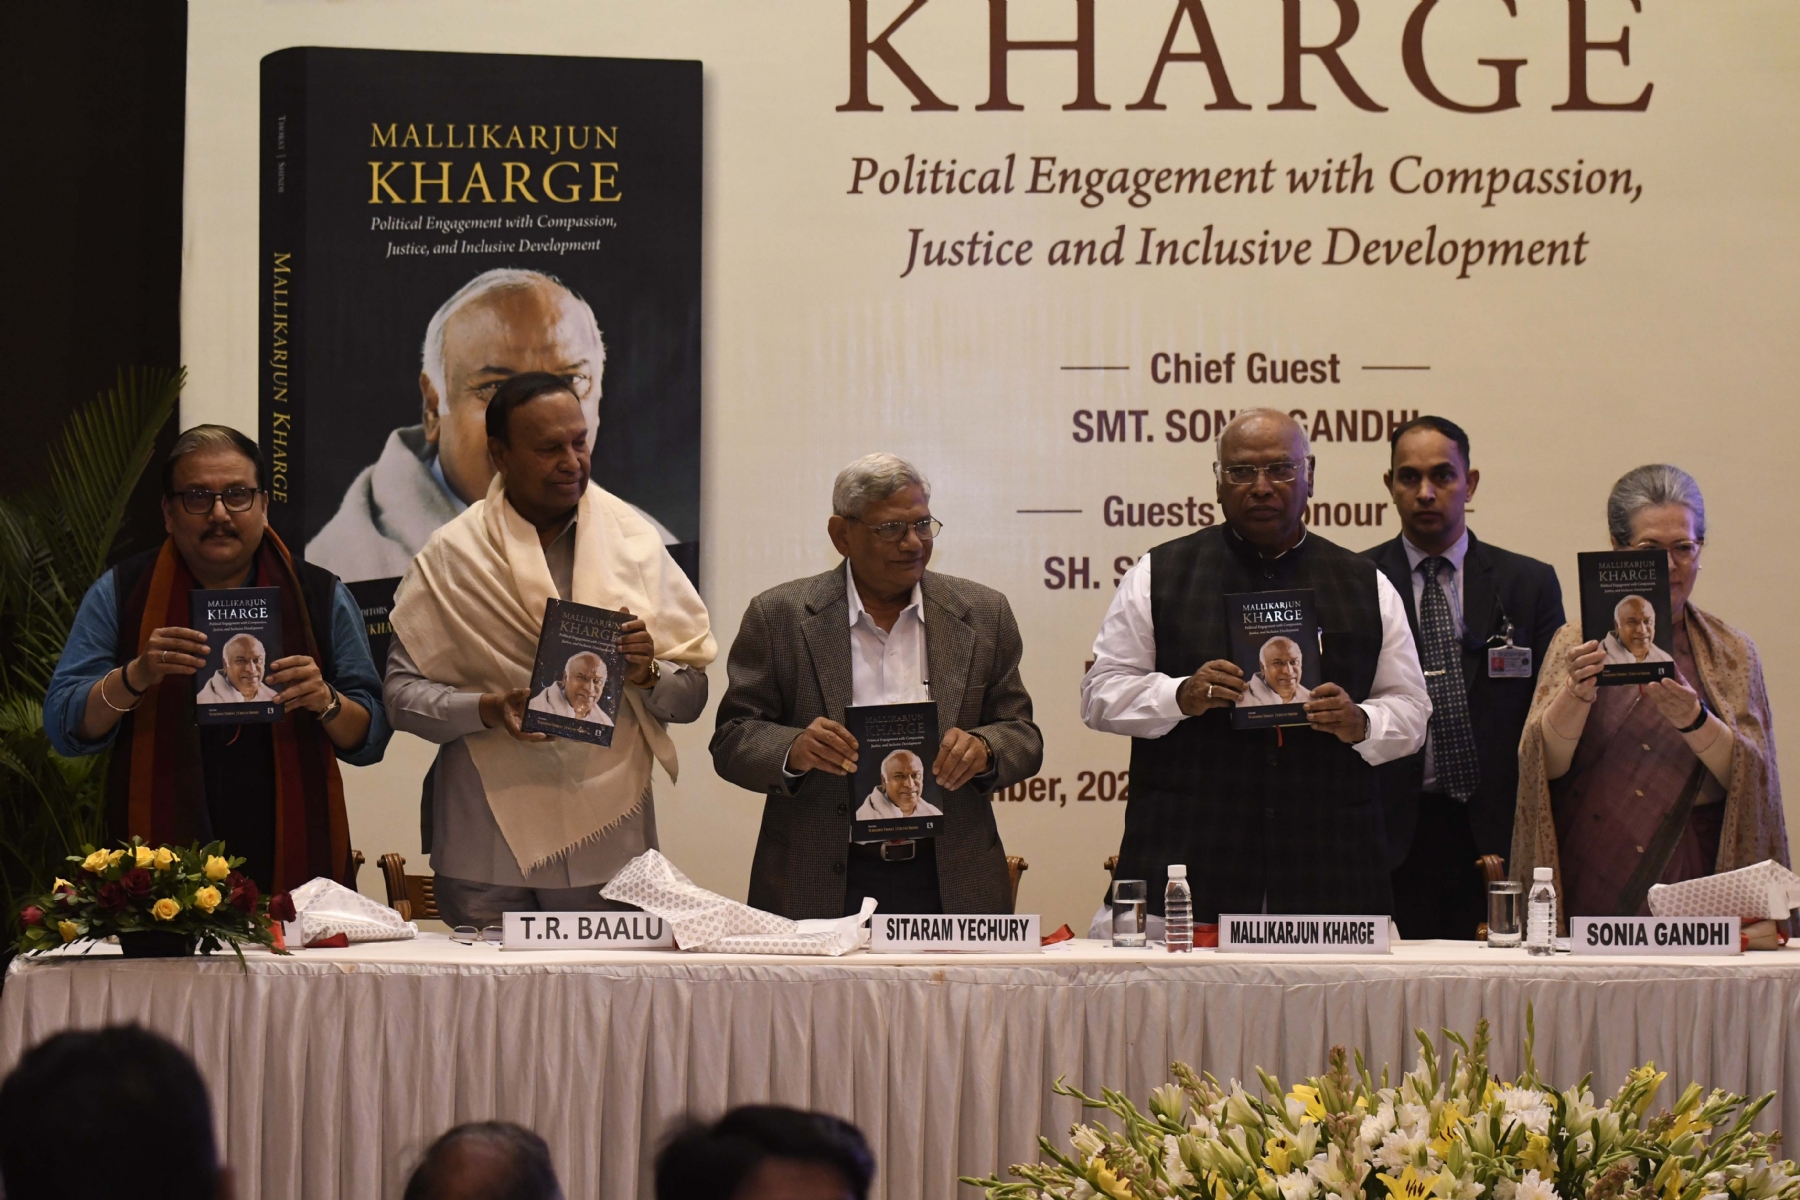 कांग्रेस अध्यक्ष मल्लिकार्जुन खड़गे, कांग्रेस संसदीय दल की अध्यक्ष सोनिया गांधी और सीपीआई (एम) महासचिव सीताराम येचुरी के साथ बुधवार को नई दिल्ली में 'मल्लिकार्जुन खड़गे की जीवनी पर पुस्तक का विमोचन।